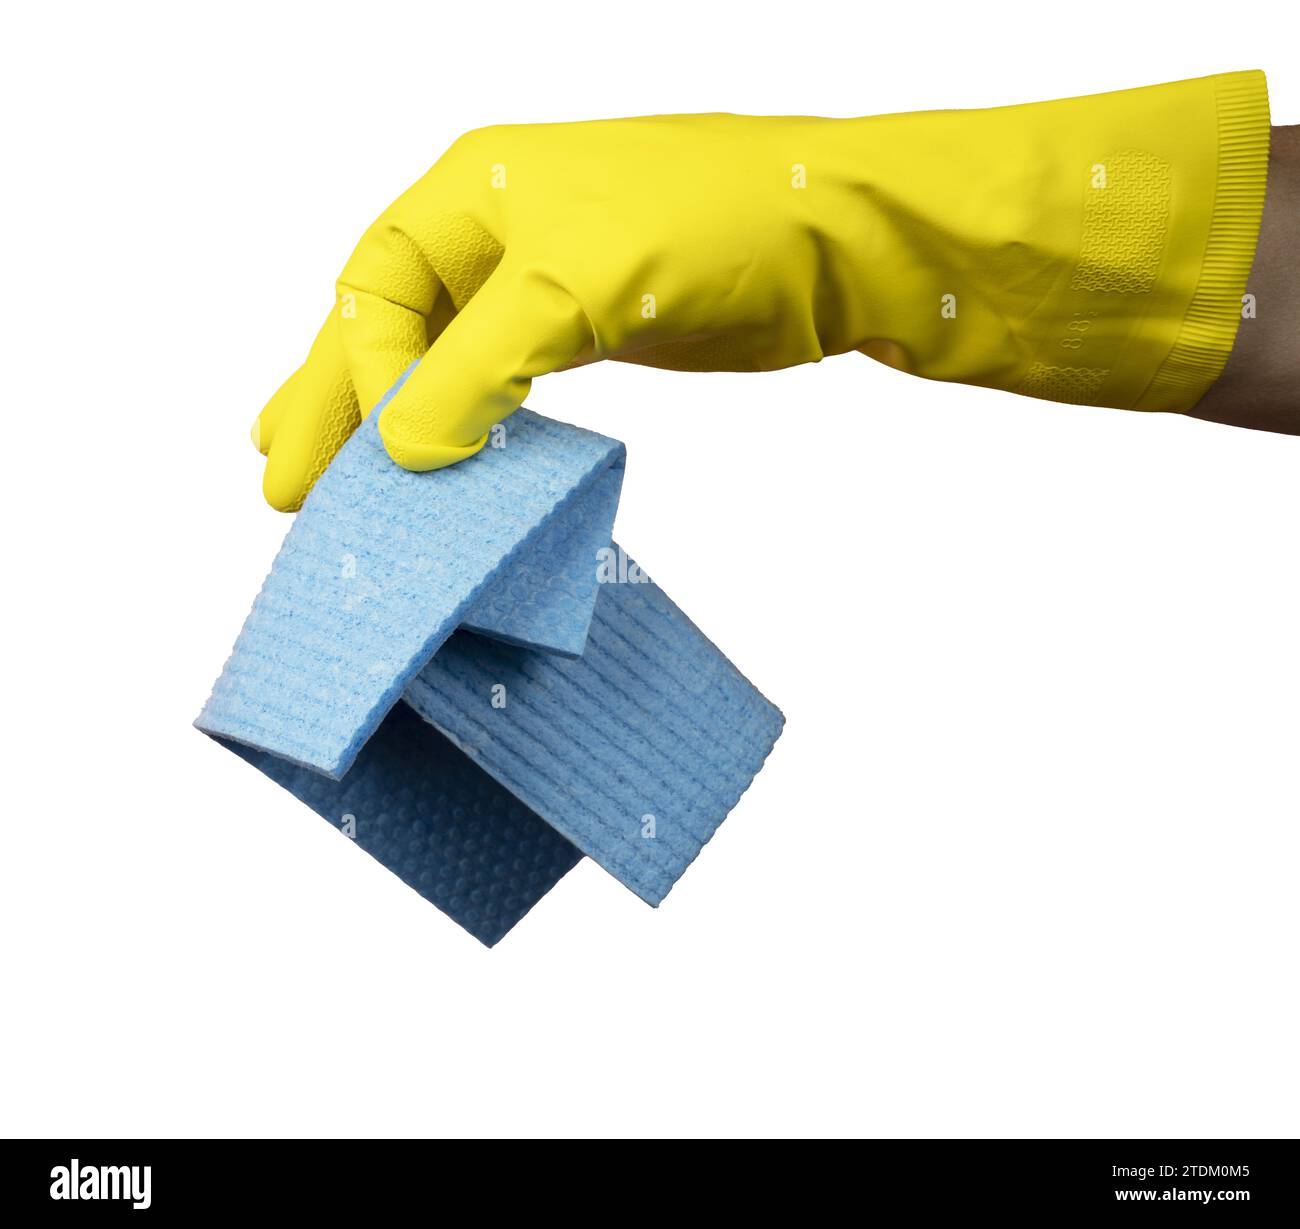 una mano con un guante de goma amarillo sostiene una esponja de limpieza con un fondo transparente Foto de stock